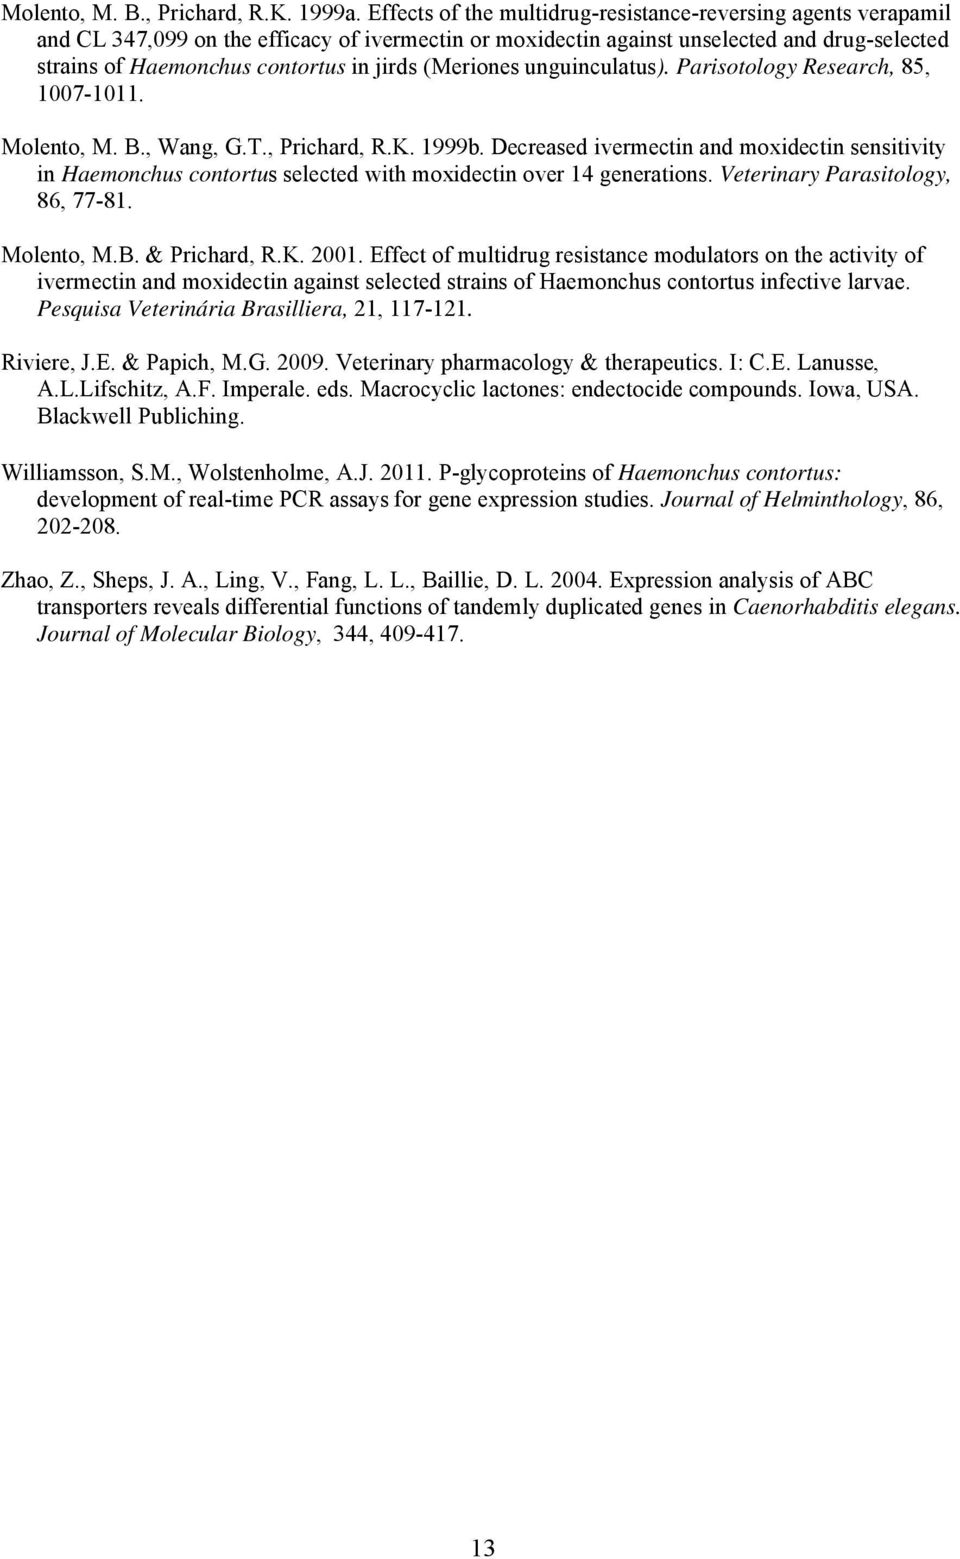 (Meriones unguinculatus). Parisotology Research, 85, 1007-1011. Molento, M. B., Wang, G.T., Prichard, R.K. 1999b.